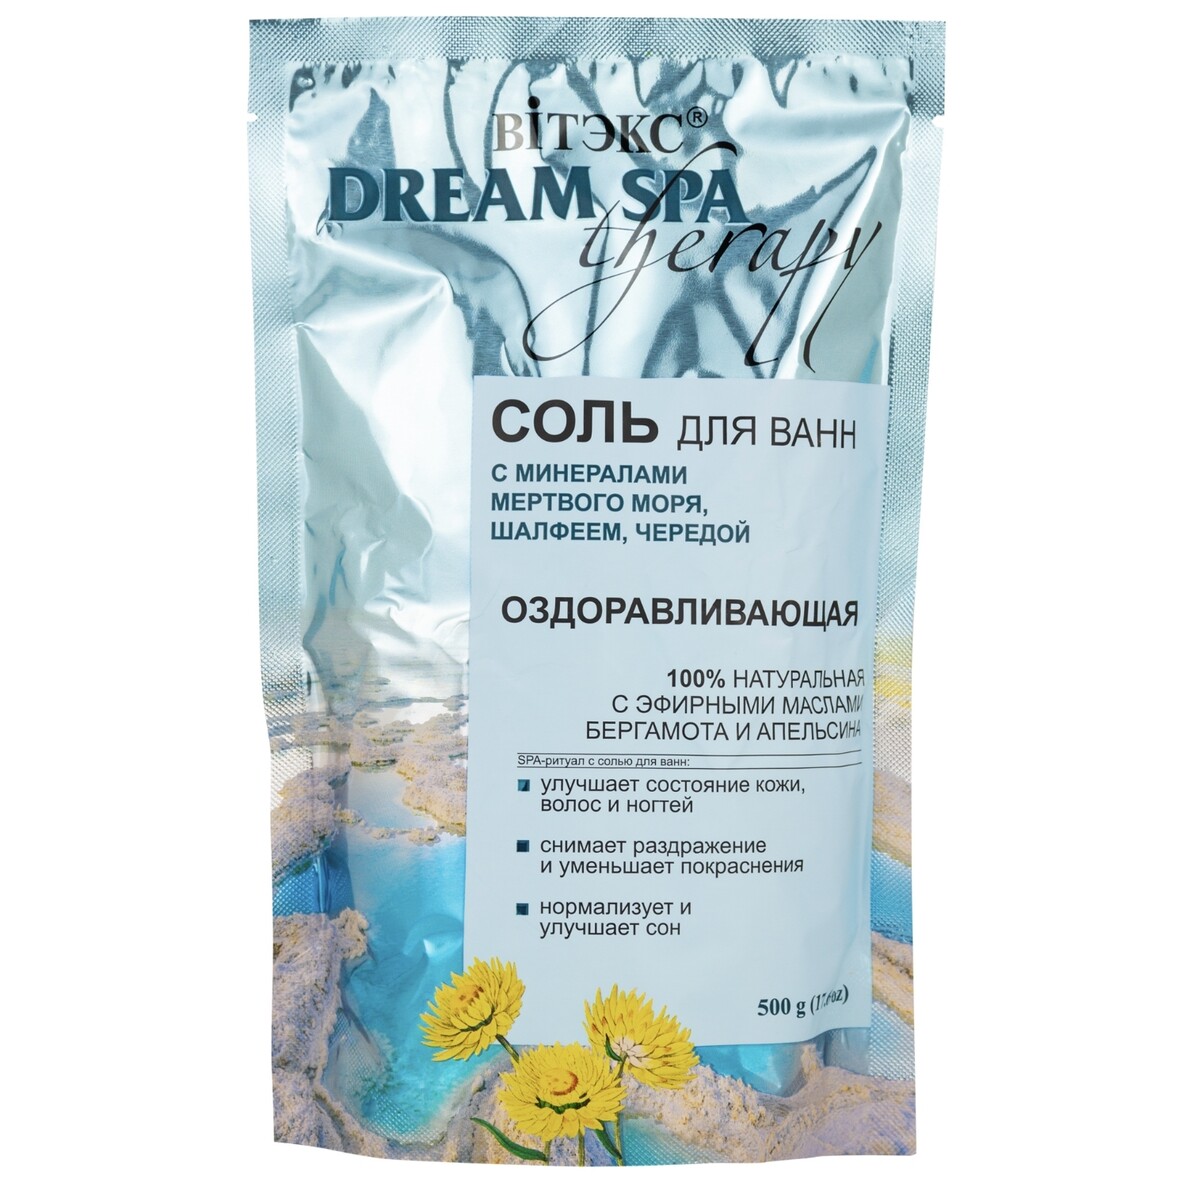 Dream spa therapy       ., -, . ., 500 